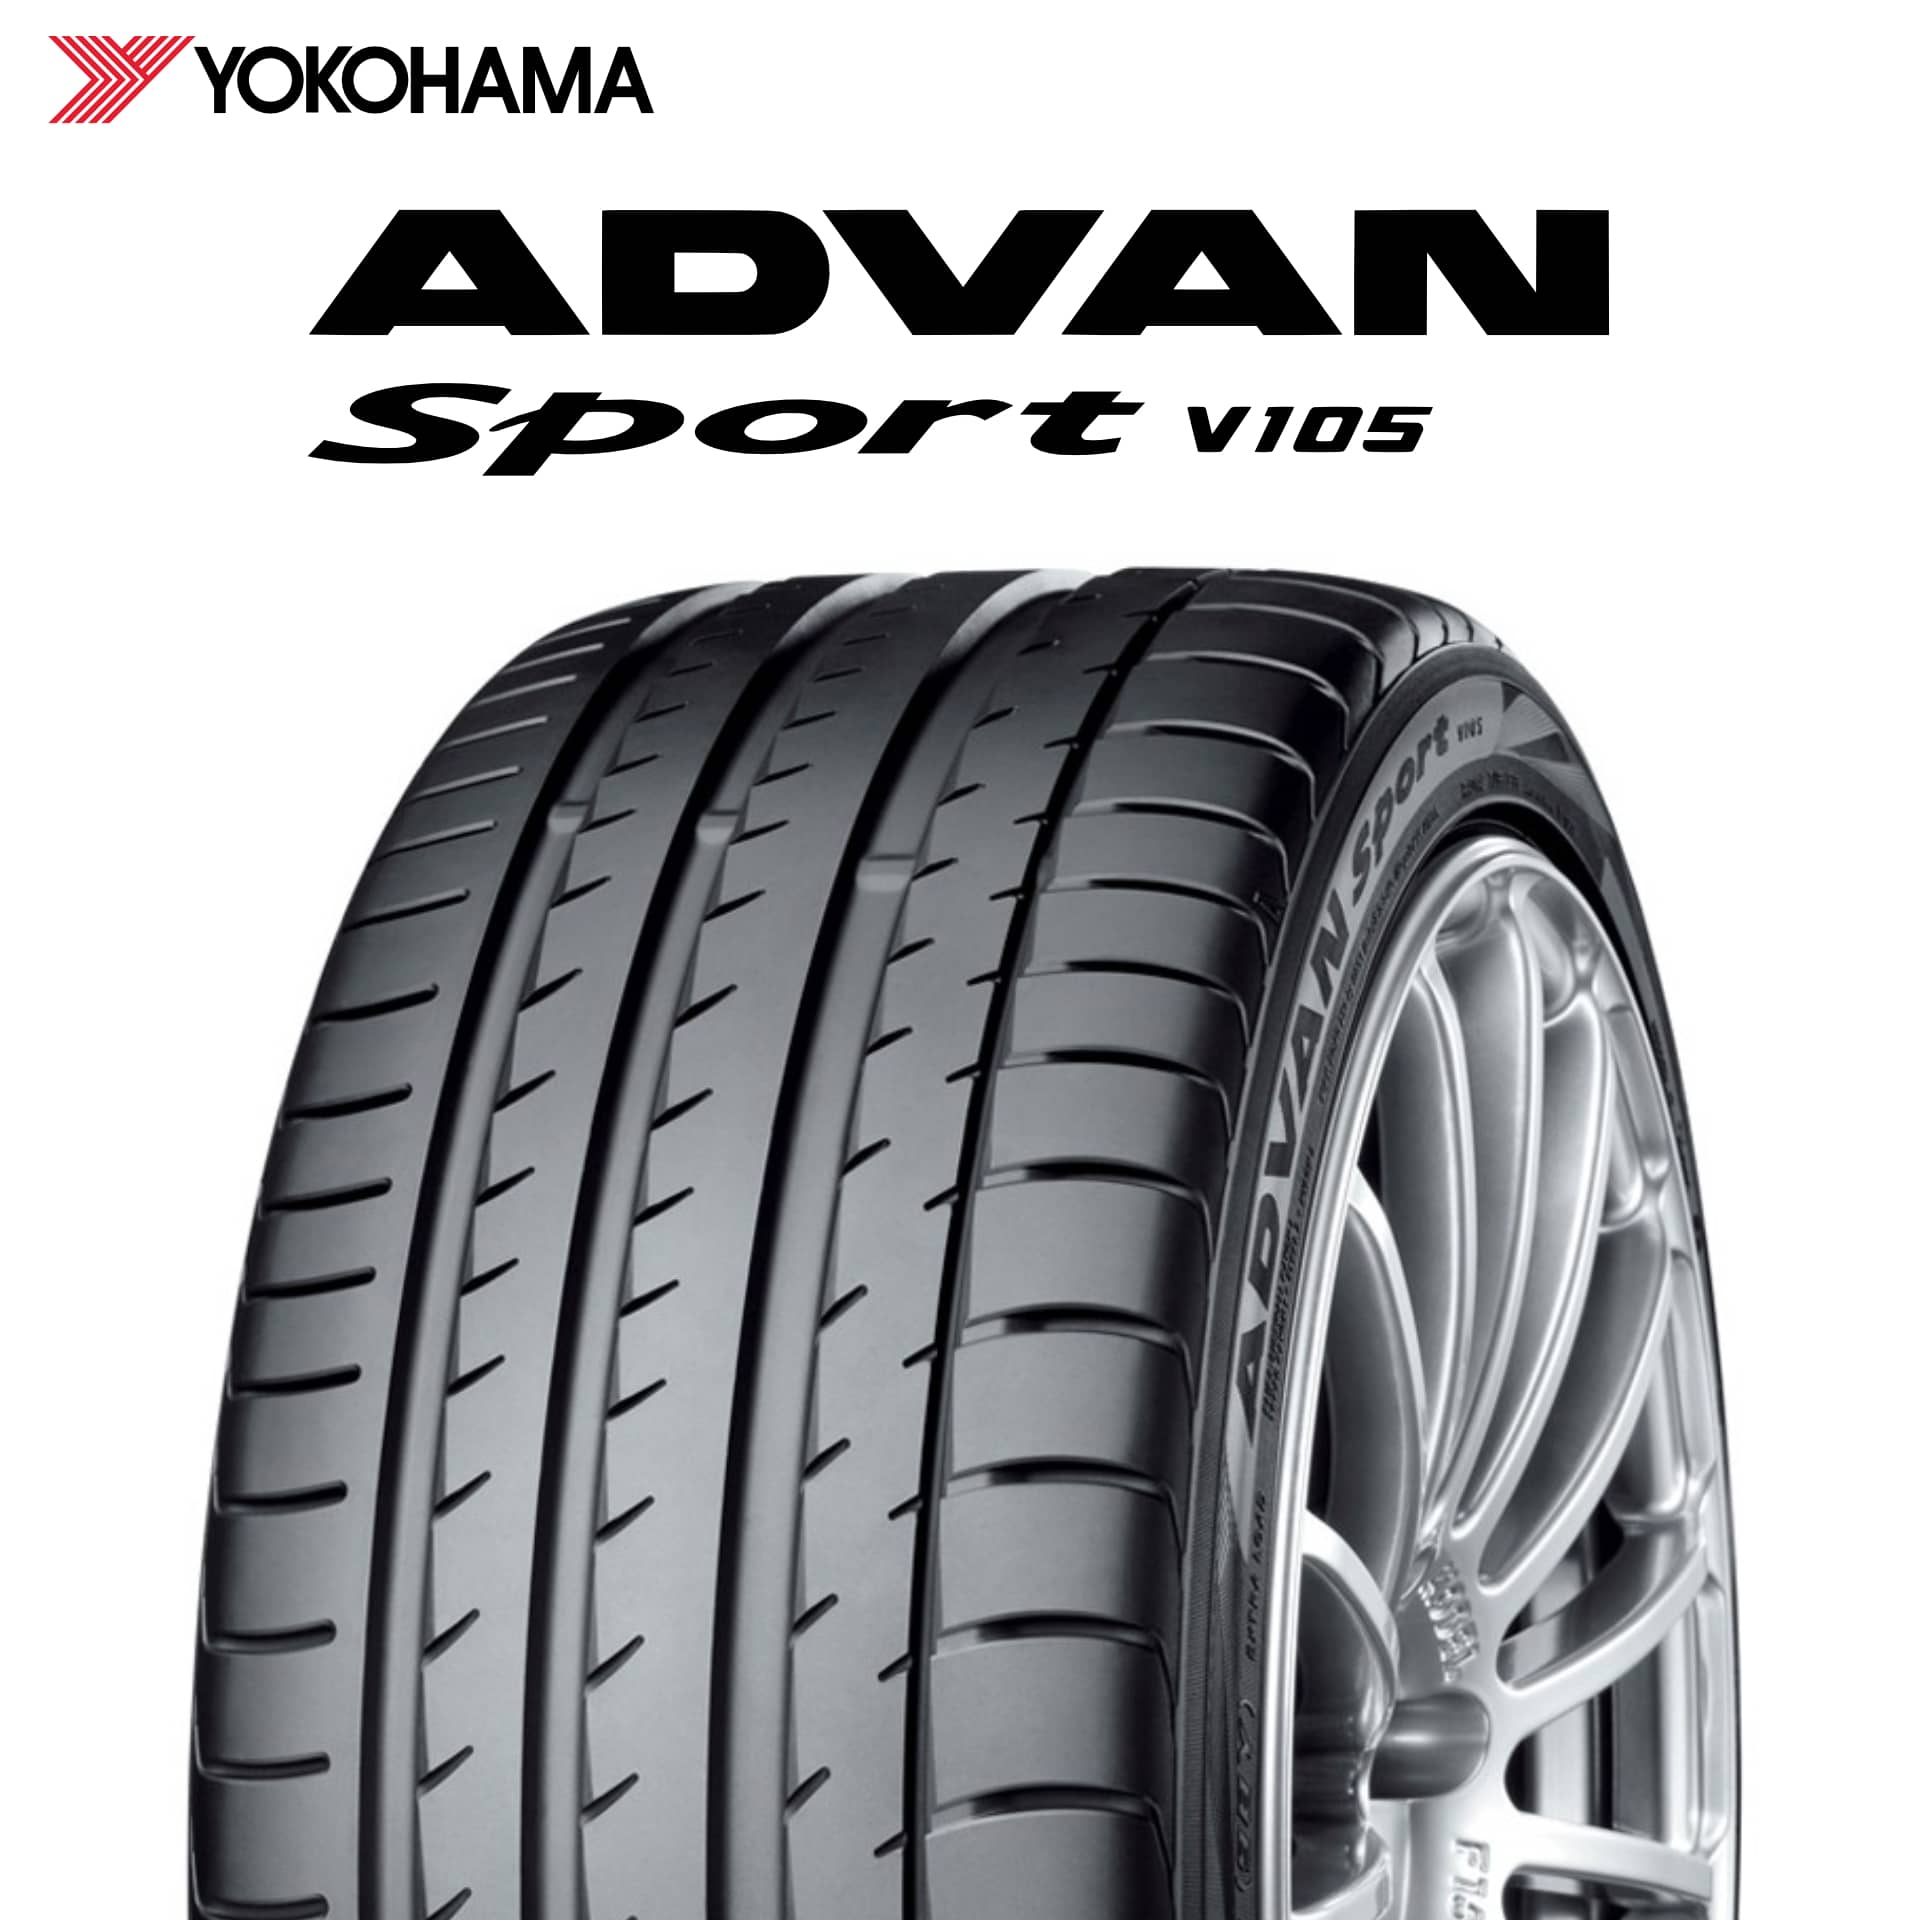 22年製 日本製 205/55R16 91W MO ヨコハマタイヤ ADVAN Sport V105 (アドバン スポーツV105) メルセデスベンツ承認タイヤ 16インチ 新品